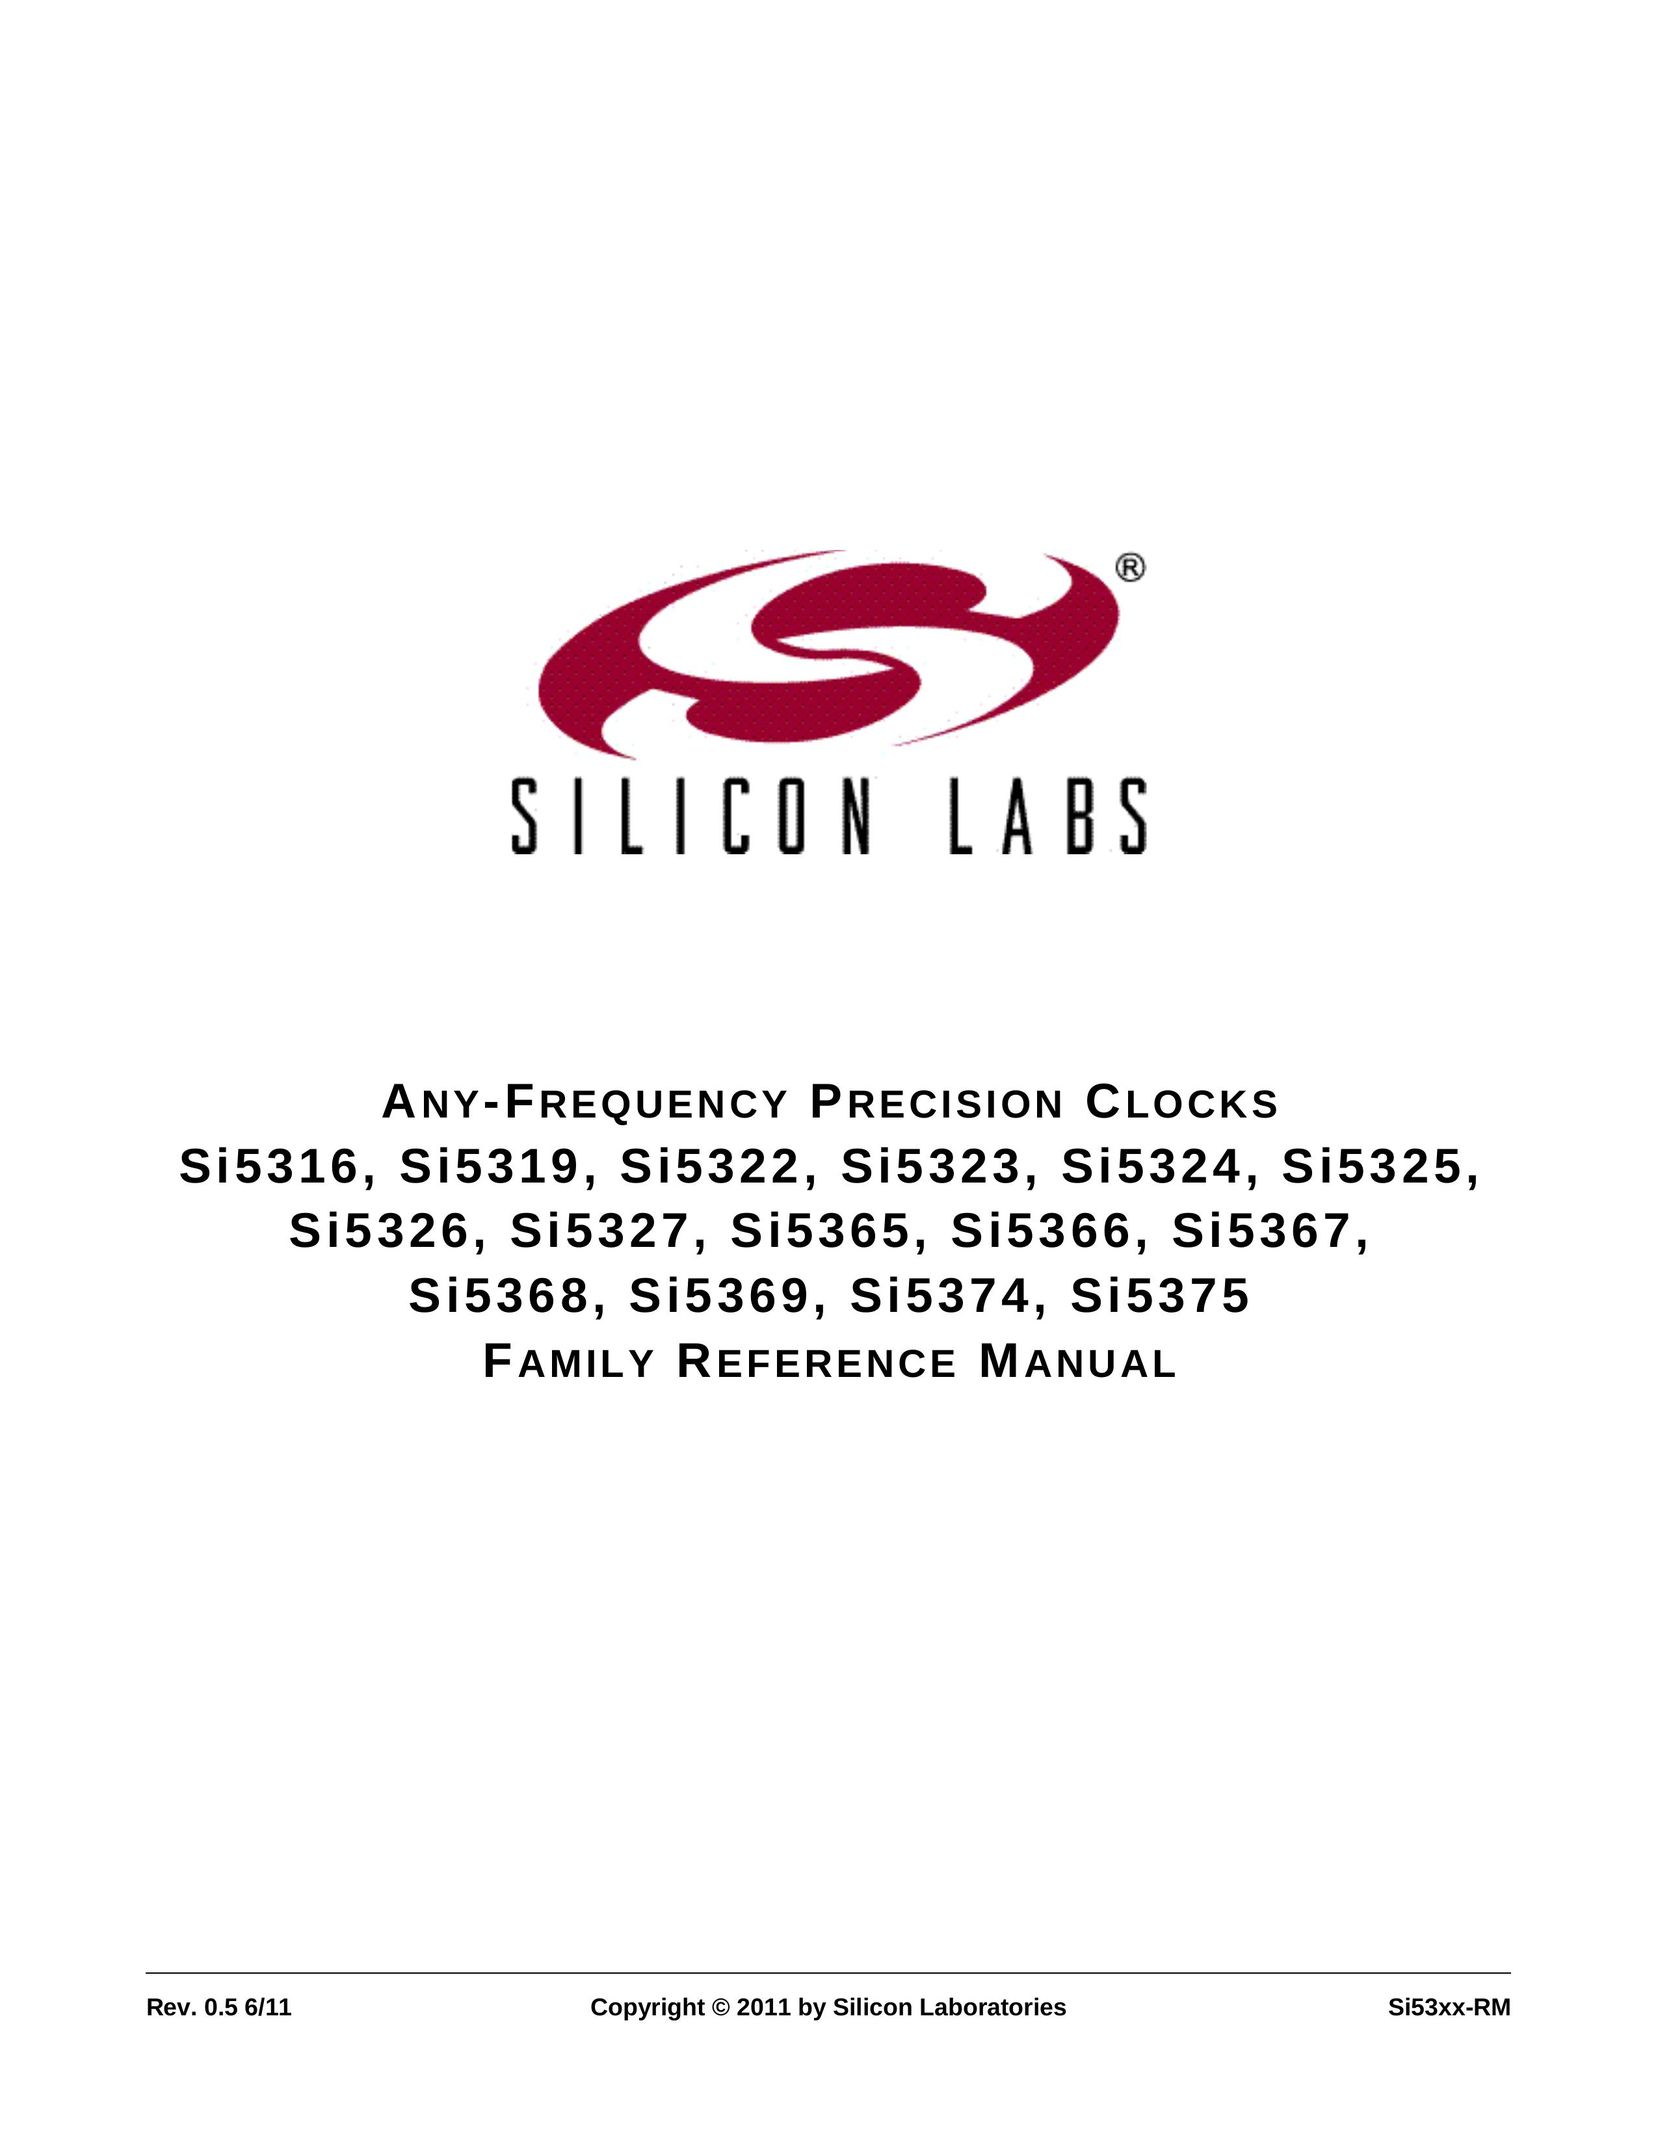 Silicon Laboratories SI5322 Clock User Manual